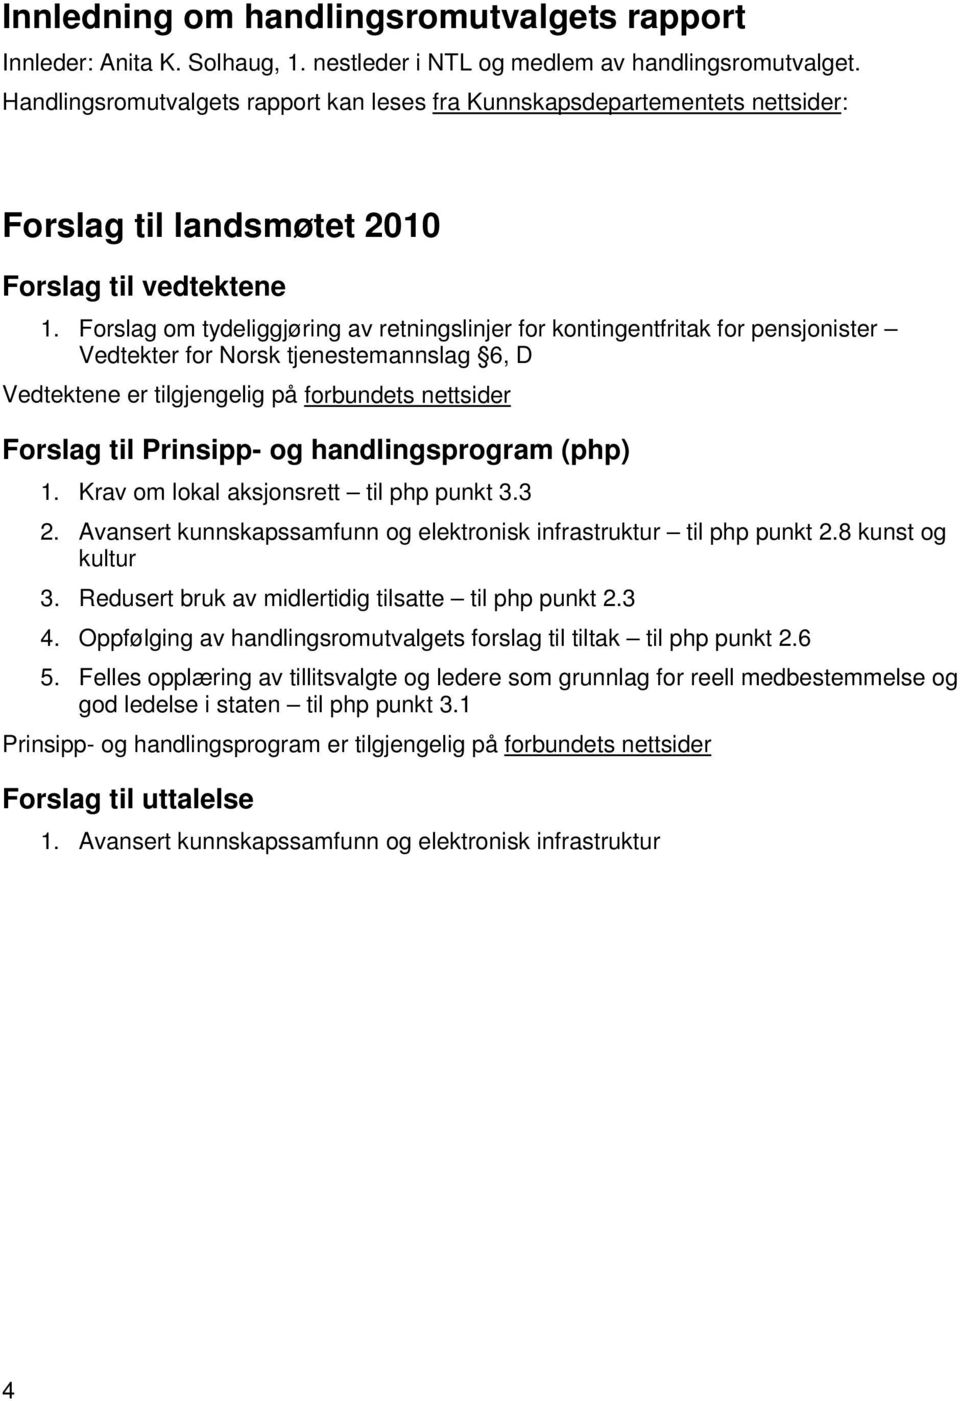 Forslag om tydeliggjøring av retningslinjer for kontingentfritak for pensjonister Vedtekter for Norsk tjenestemannslag 6, D Vedtektene er tilgjengelig på forbundets nettsider Forslag til Prinsipp- og